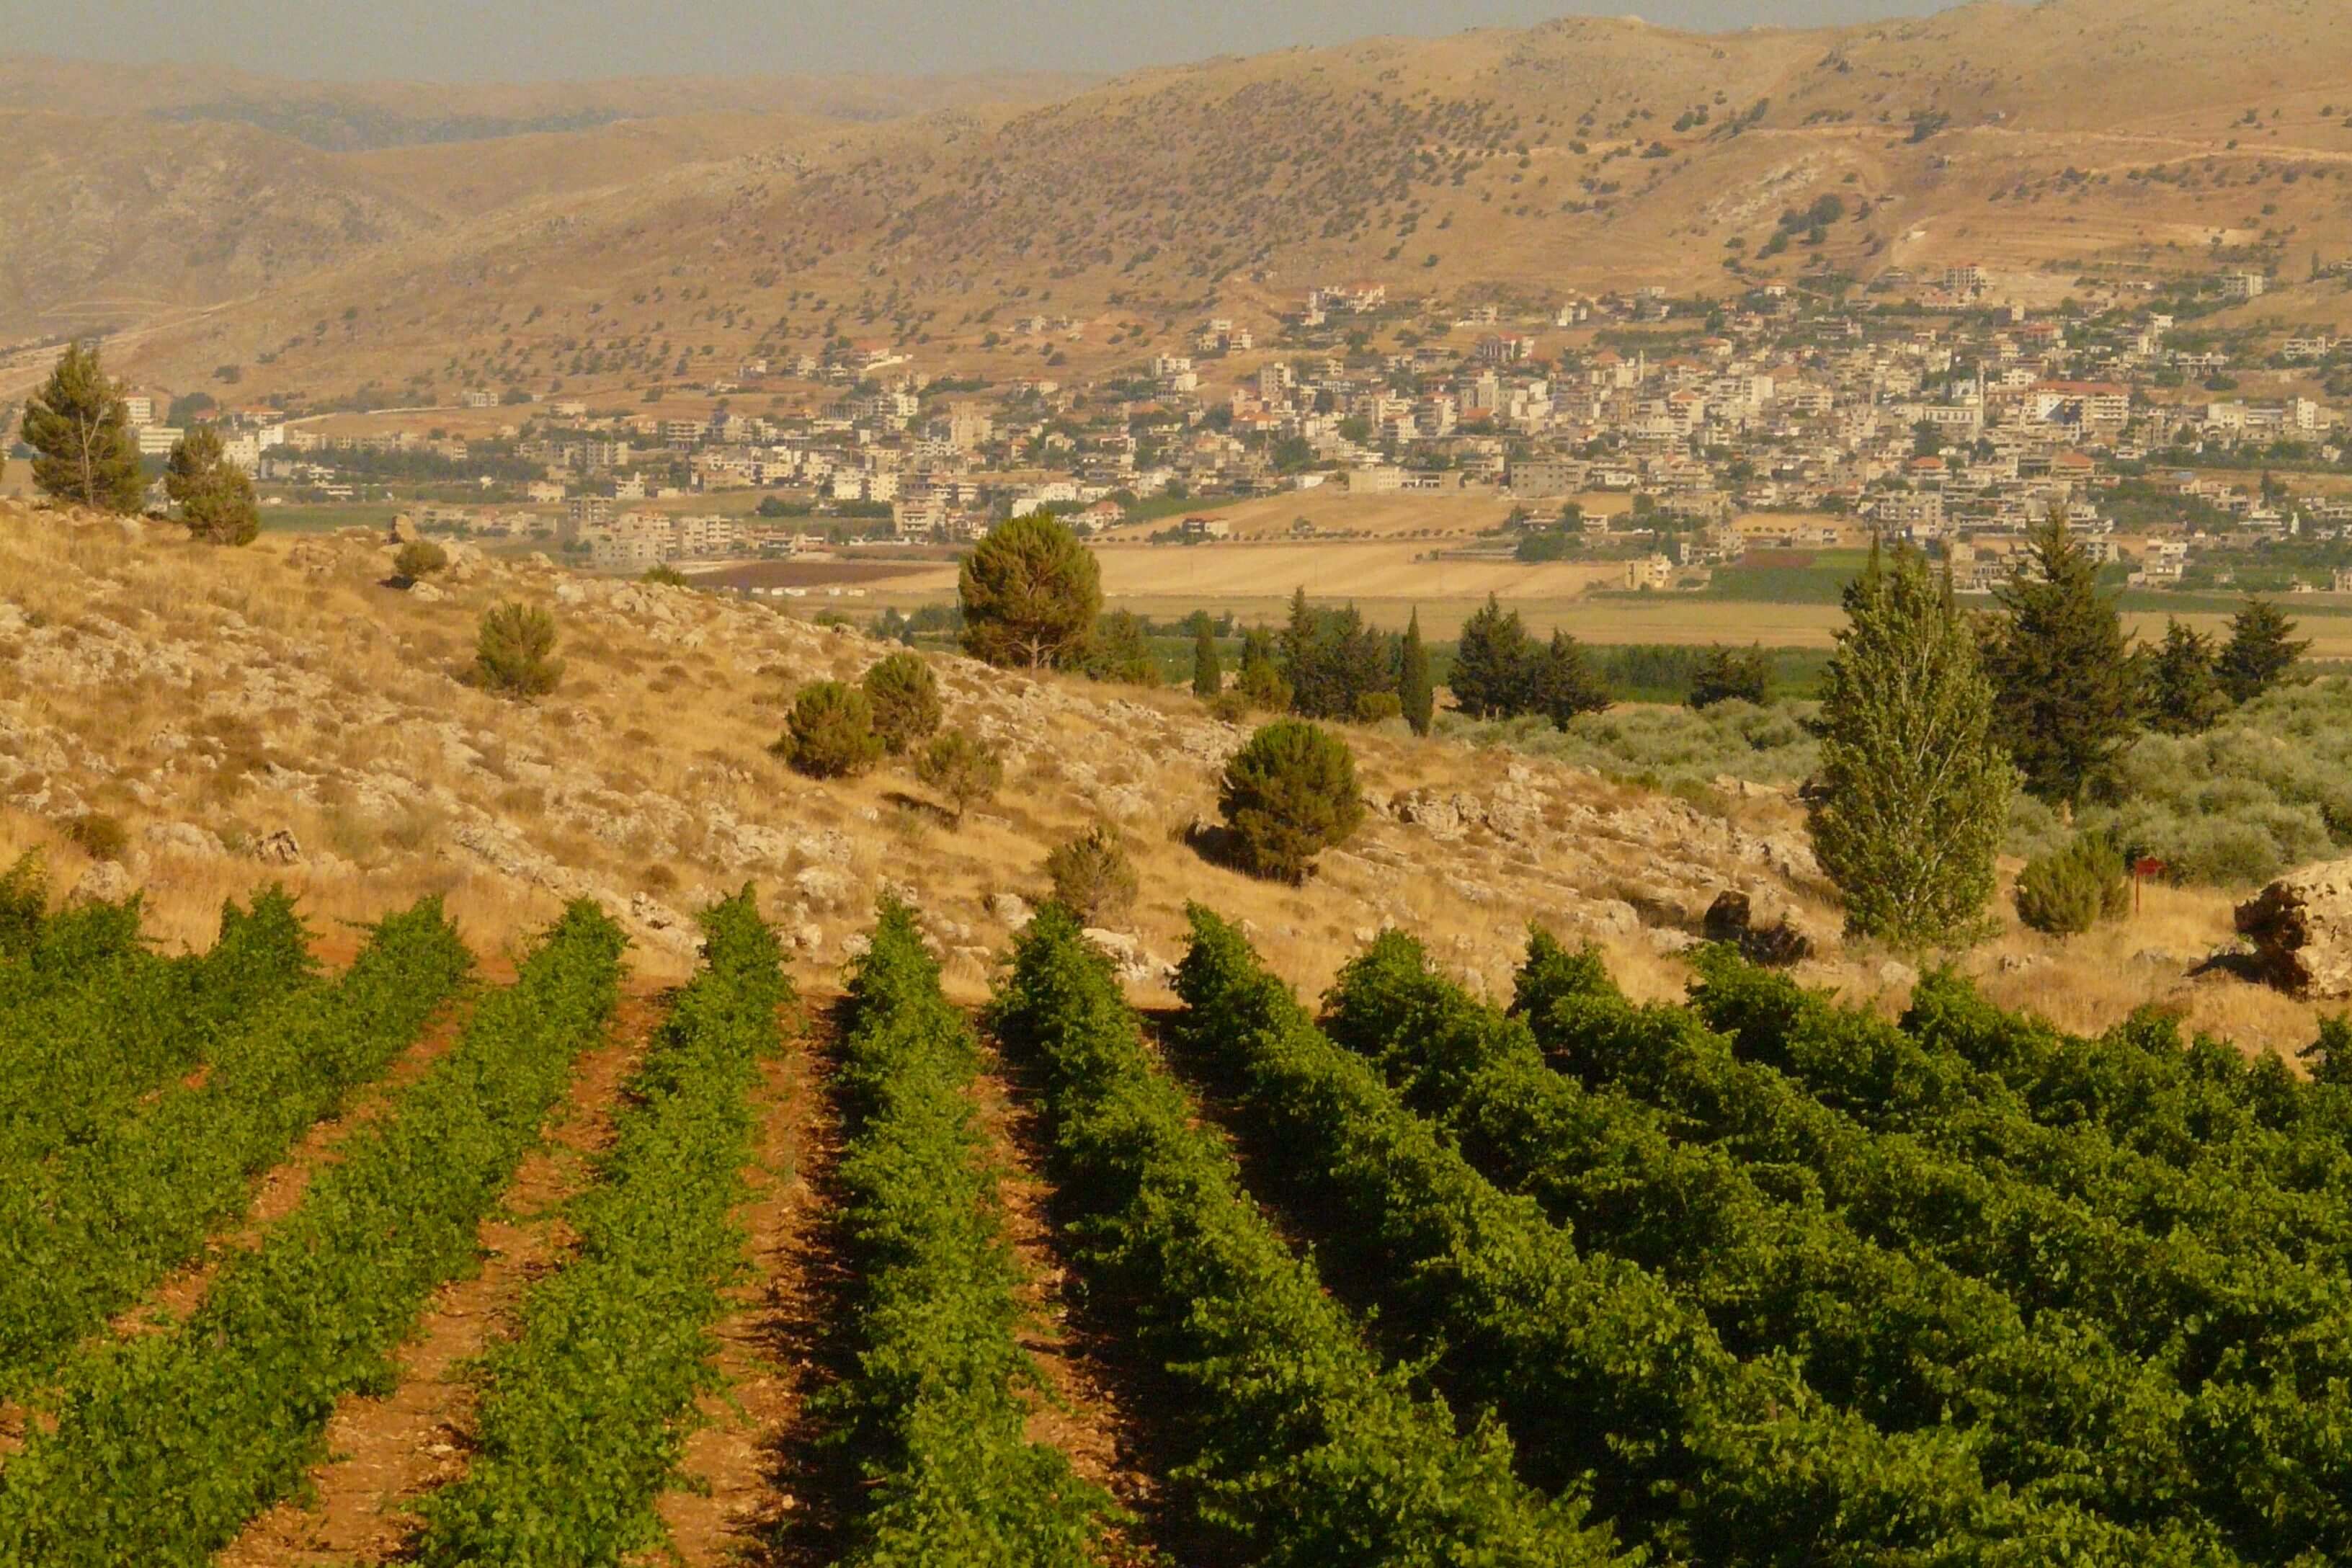 libanon, kefraya wijngaarden.jpg